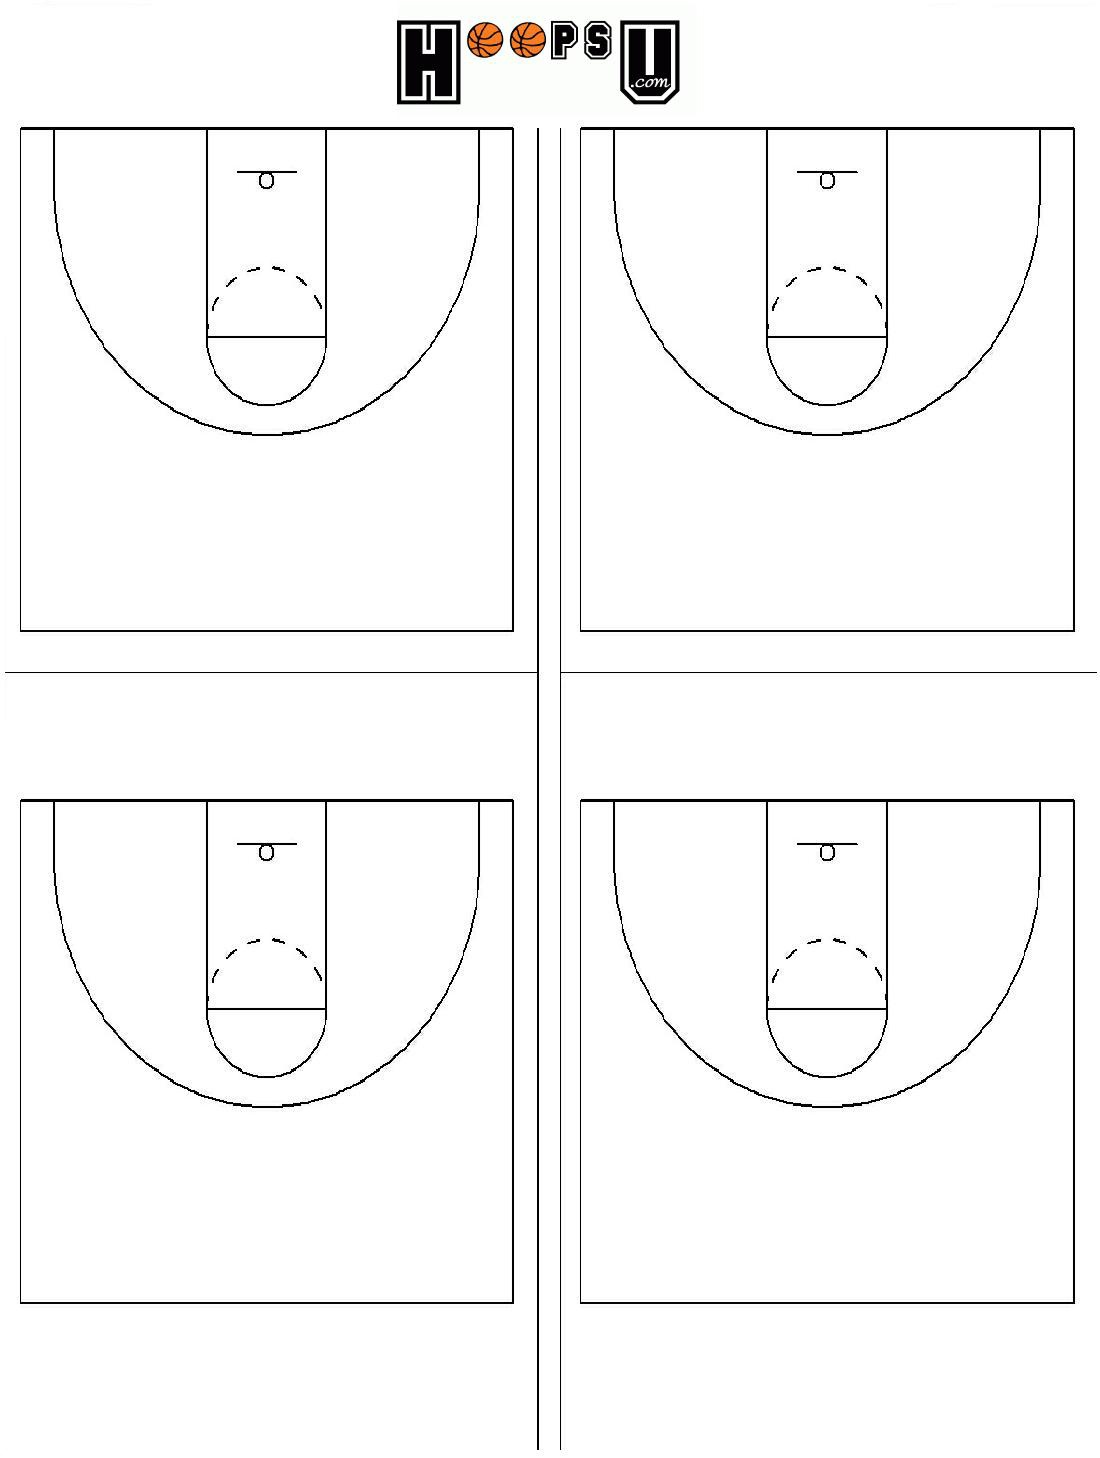 printable-half-court-basketball-diagram-printable-world-holiday